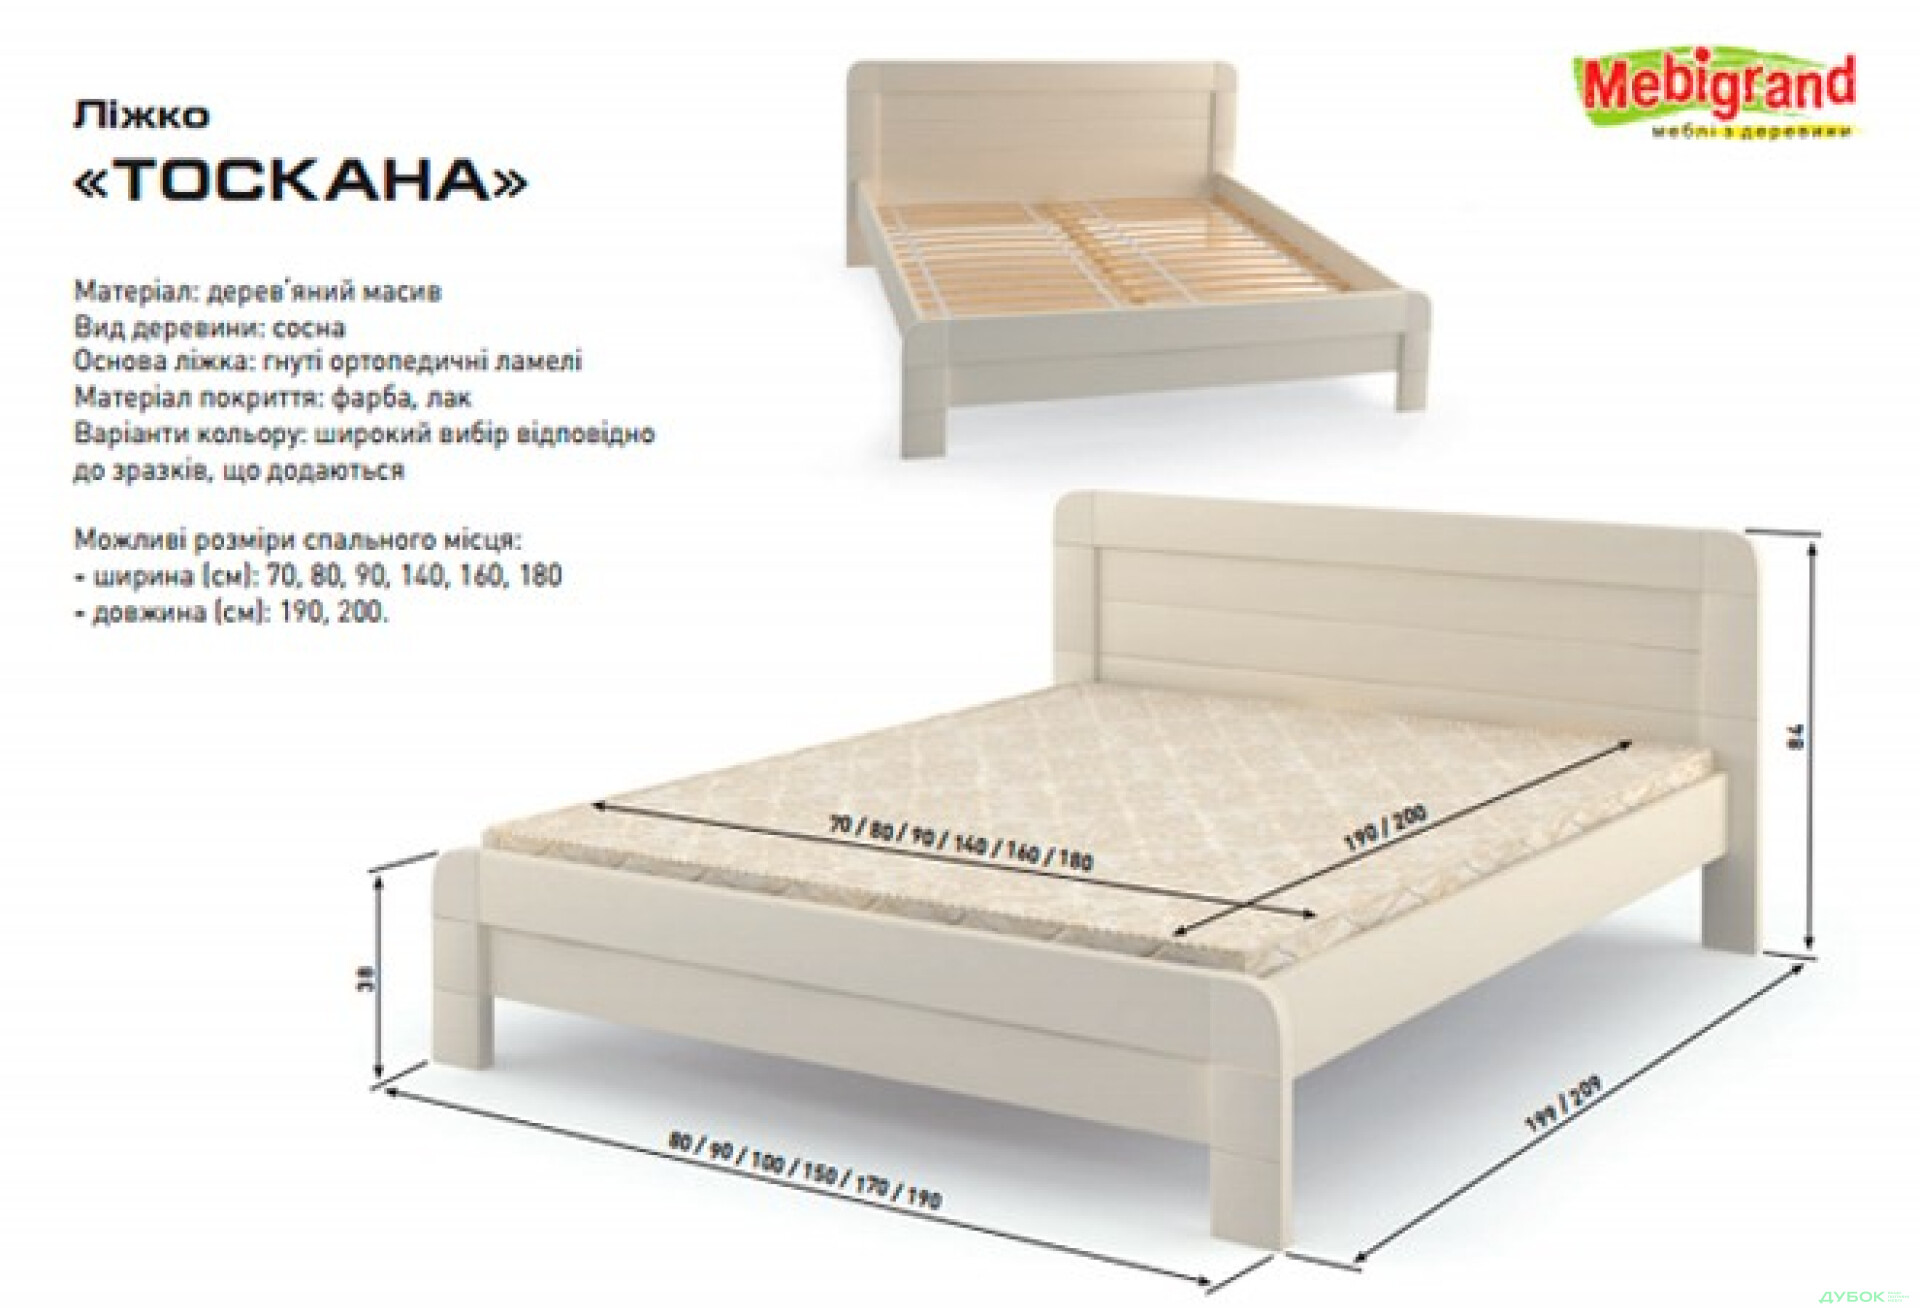 Фото 2 - Ліжко двоспальне дерев'яне Тоскана 160 Mebigrand